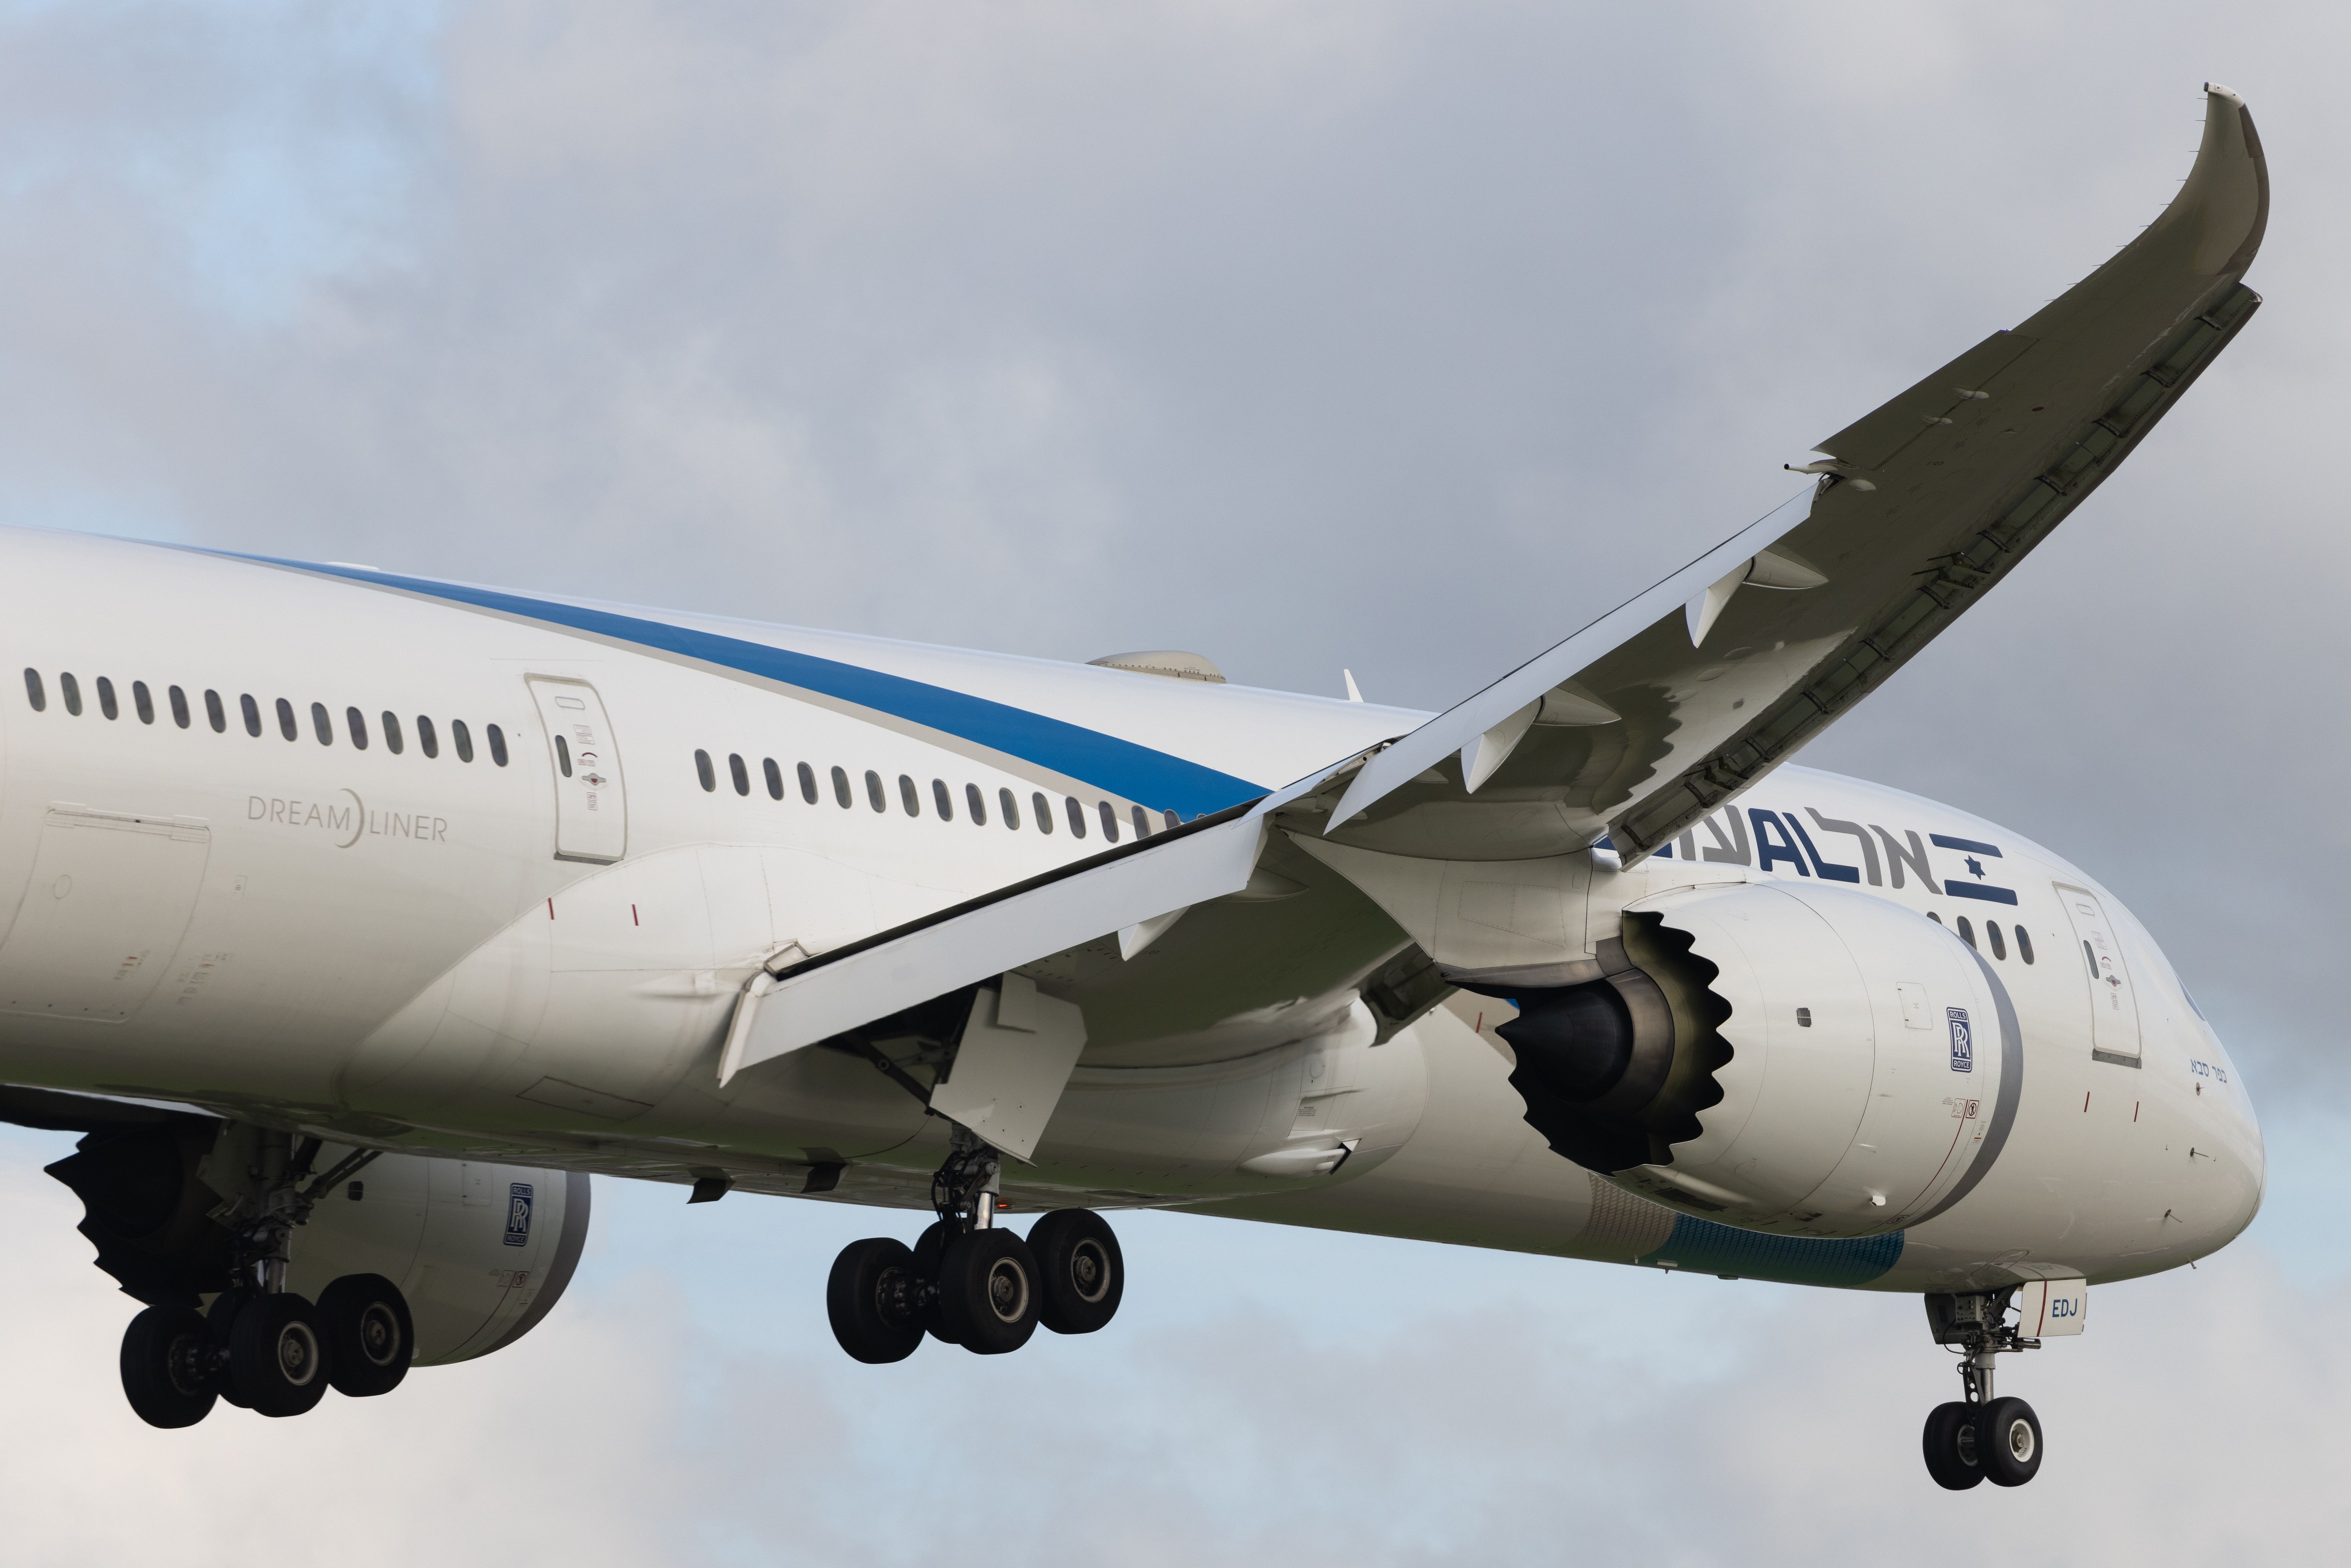 An El Al Israel Airlines Boeing 787 flying in the sky.